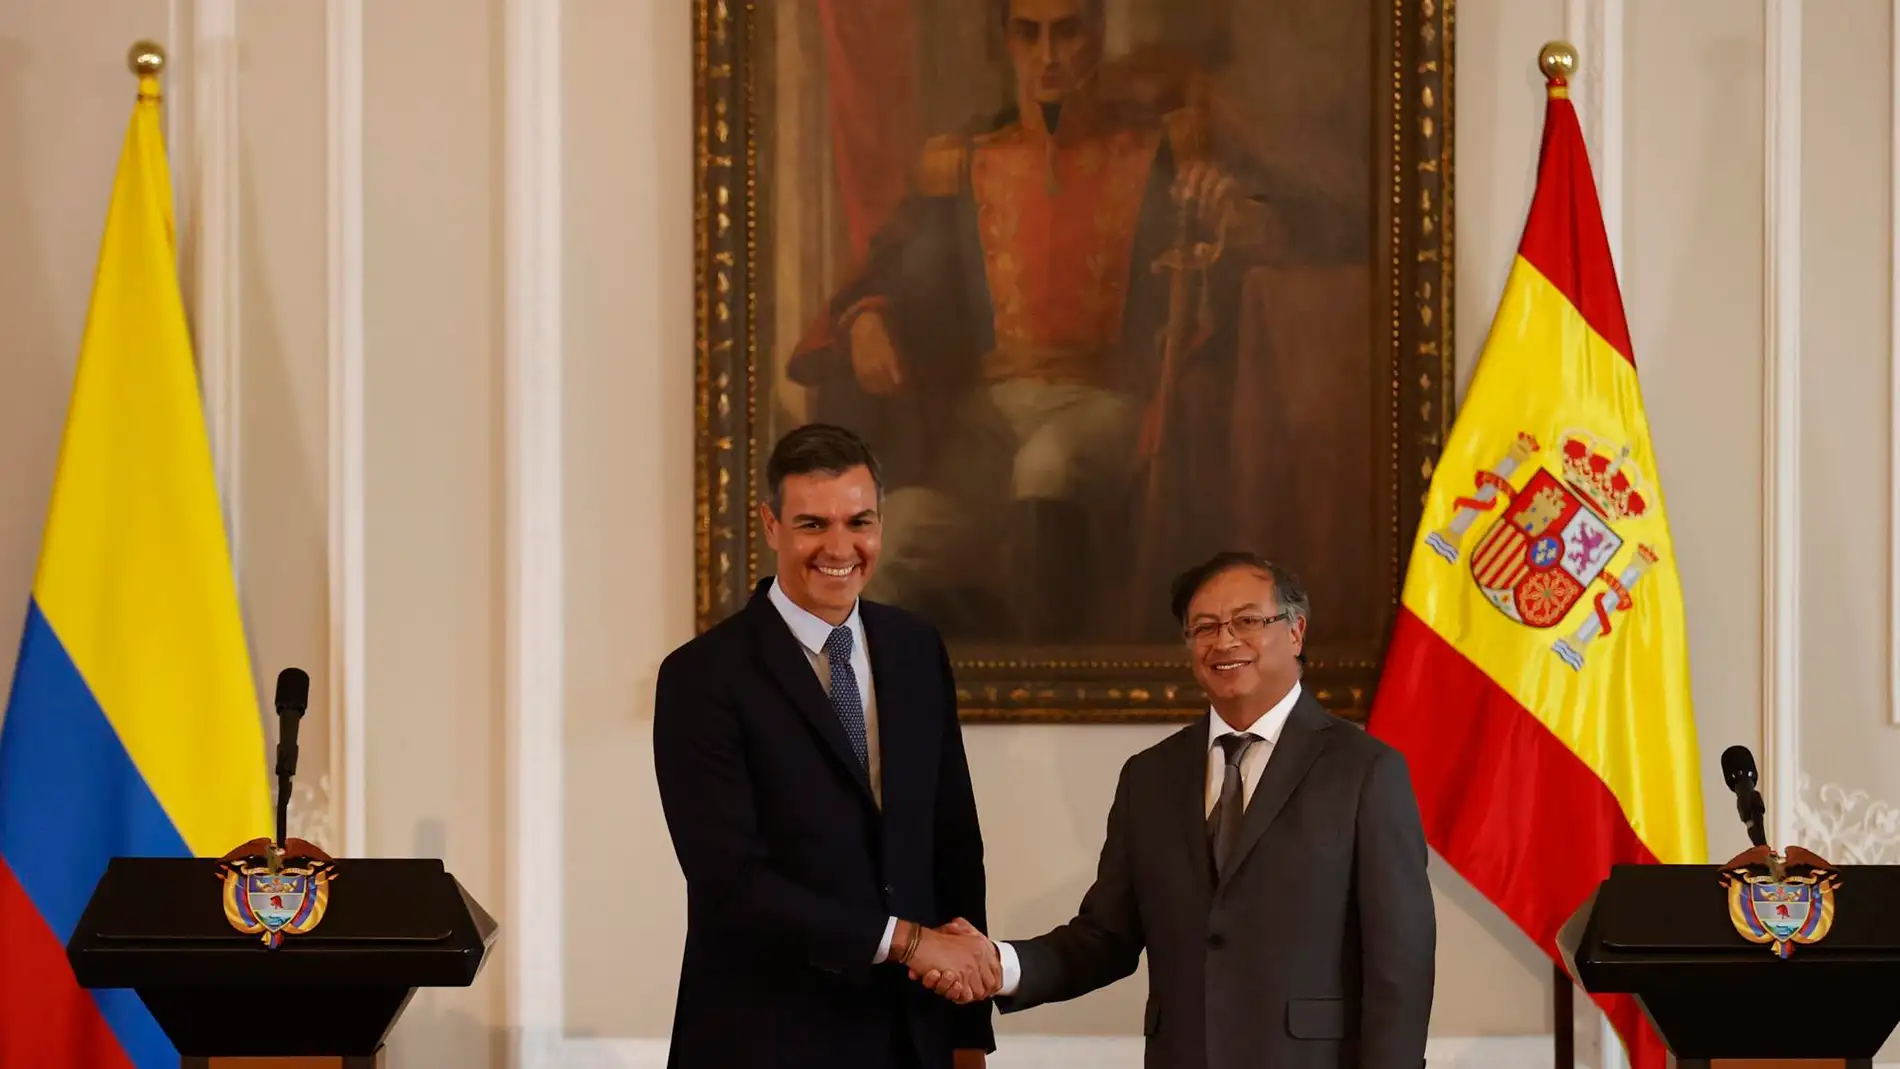 La divertida reacción de Sánchez tras ser presentado como "presidente de la República" en un acto oficial en Colombia